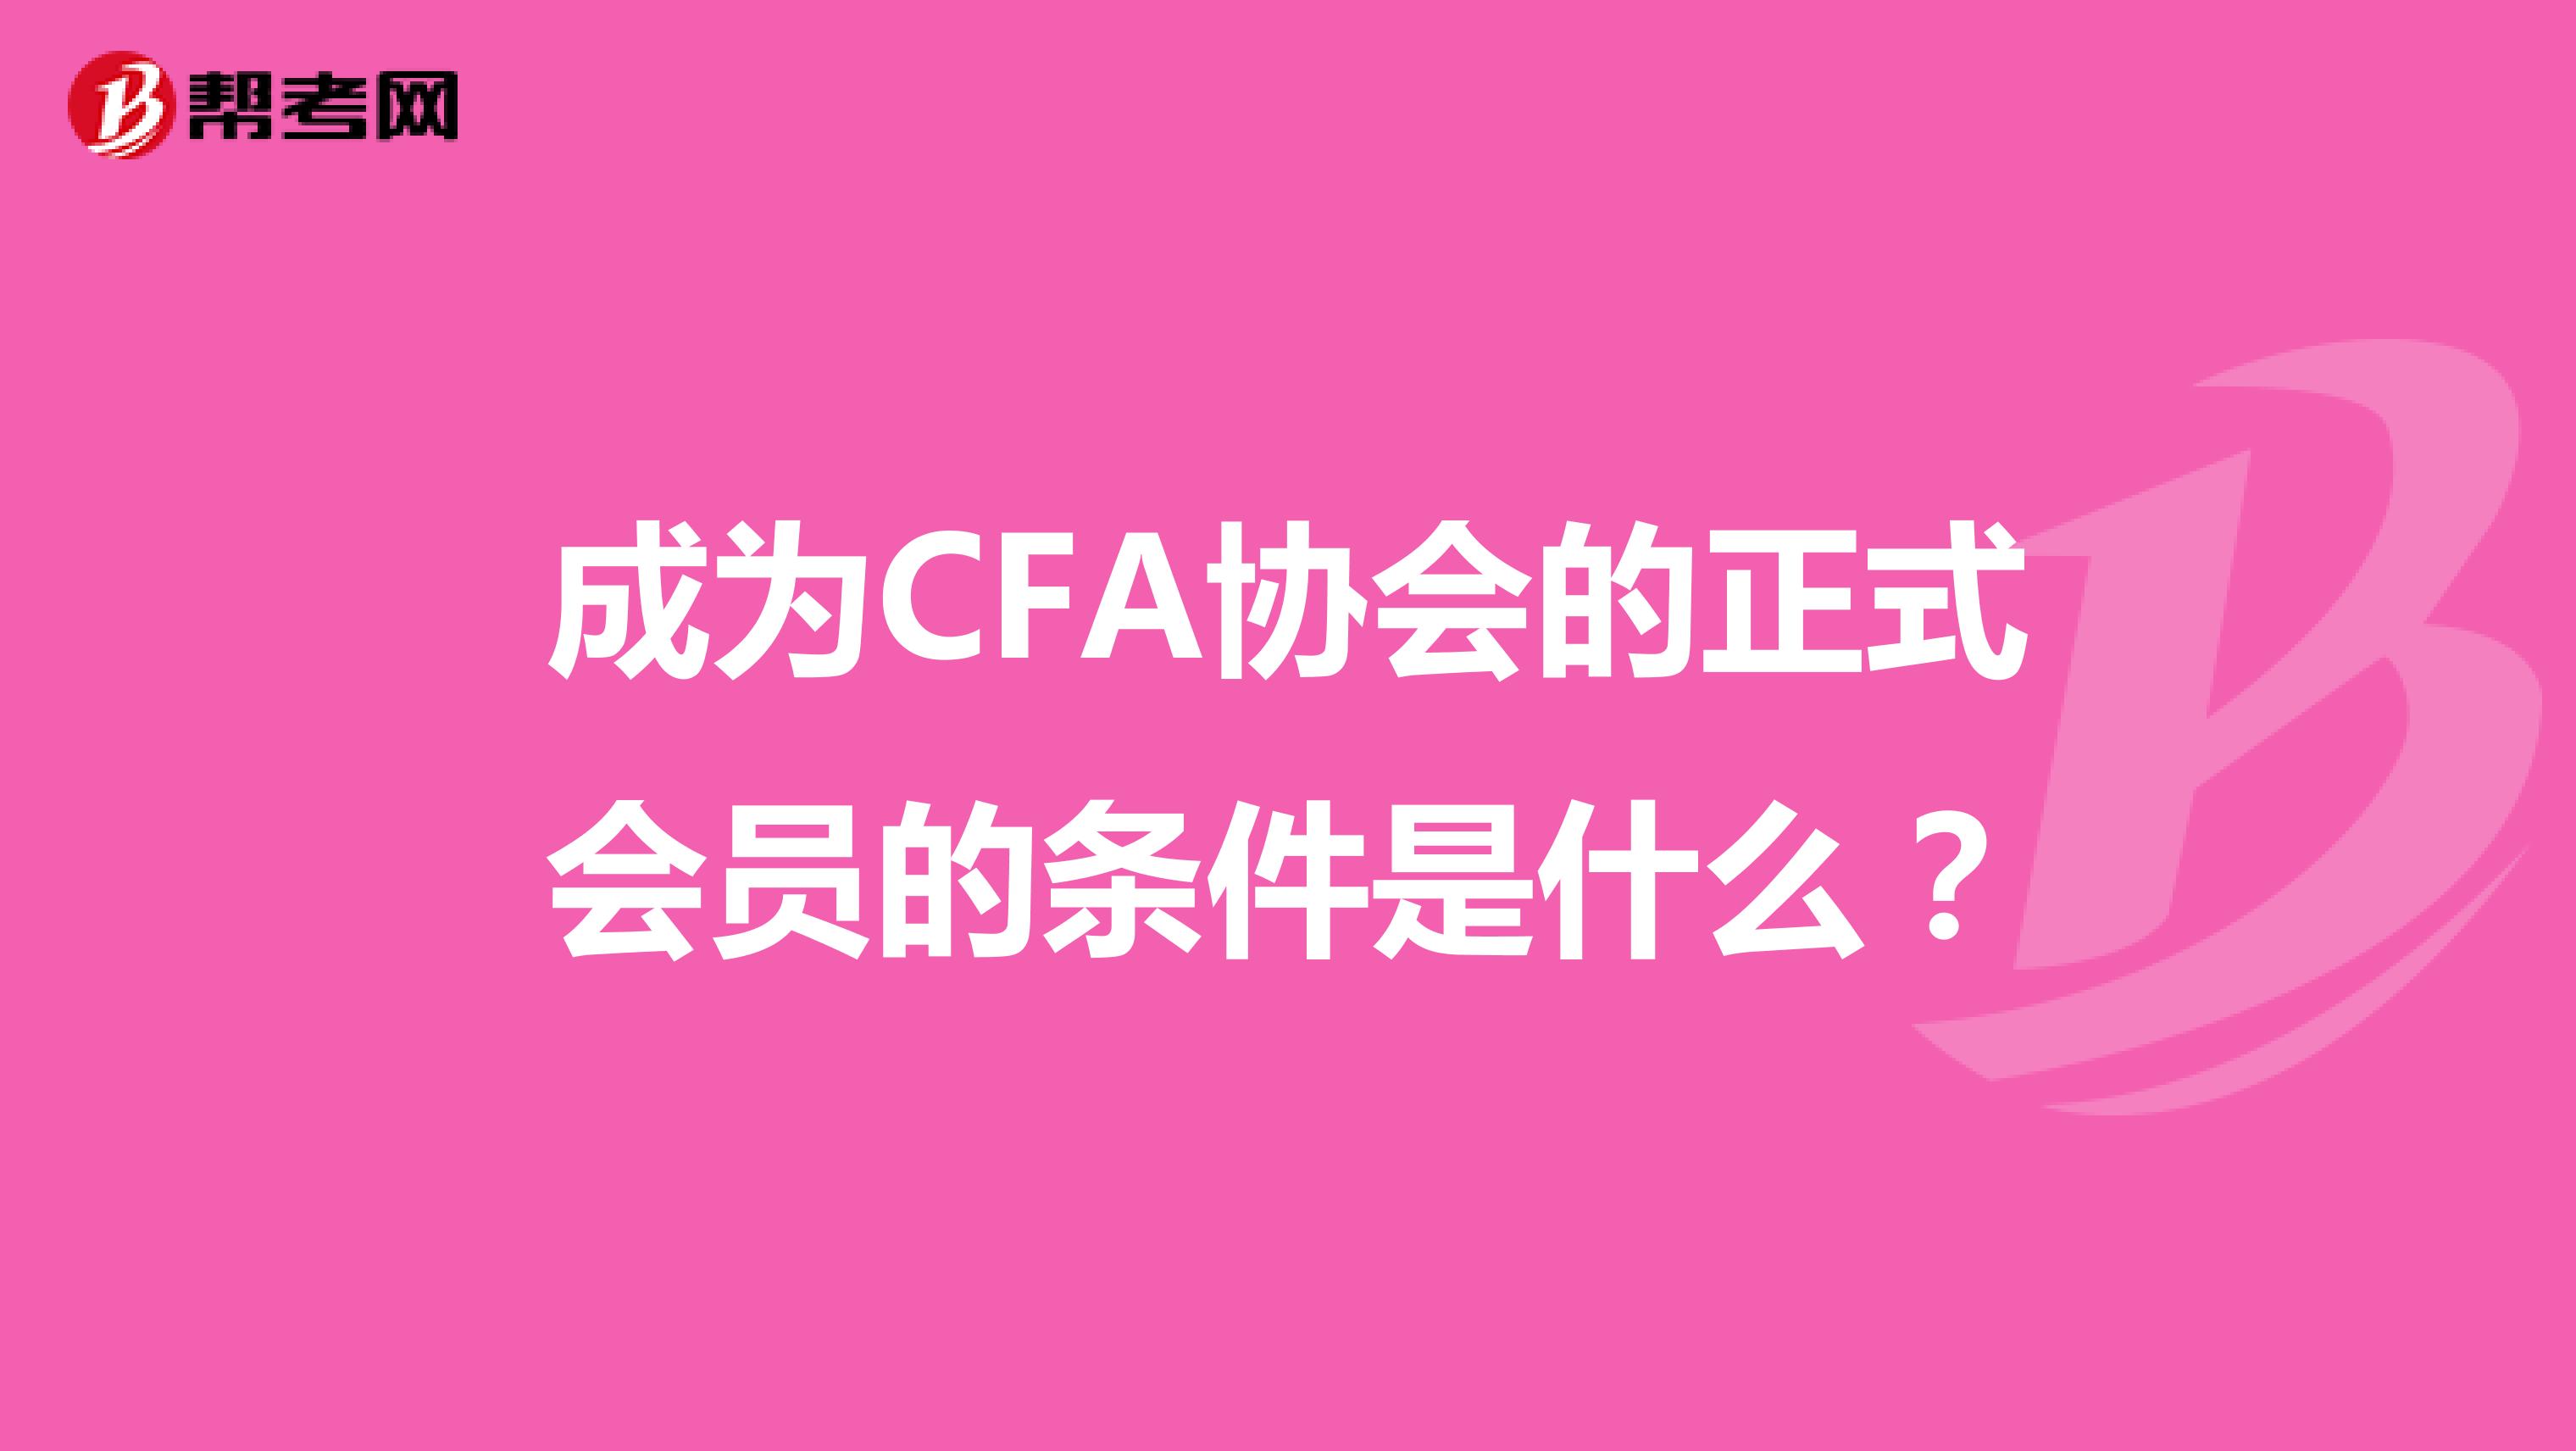 成为CFA协会的正式会员的条件是什么？